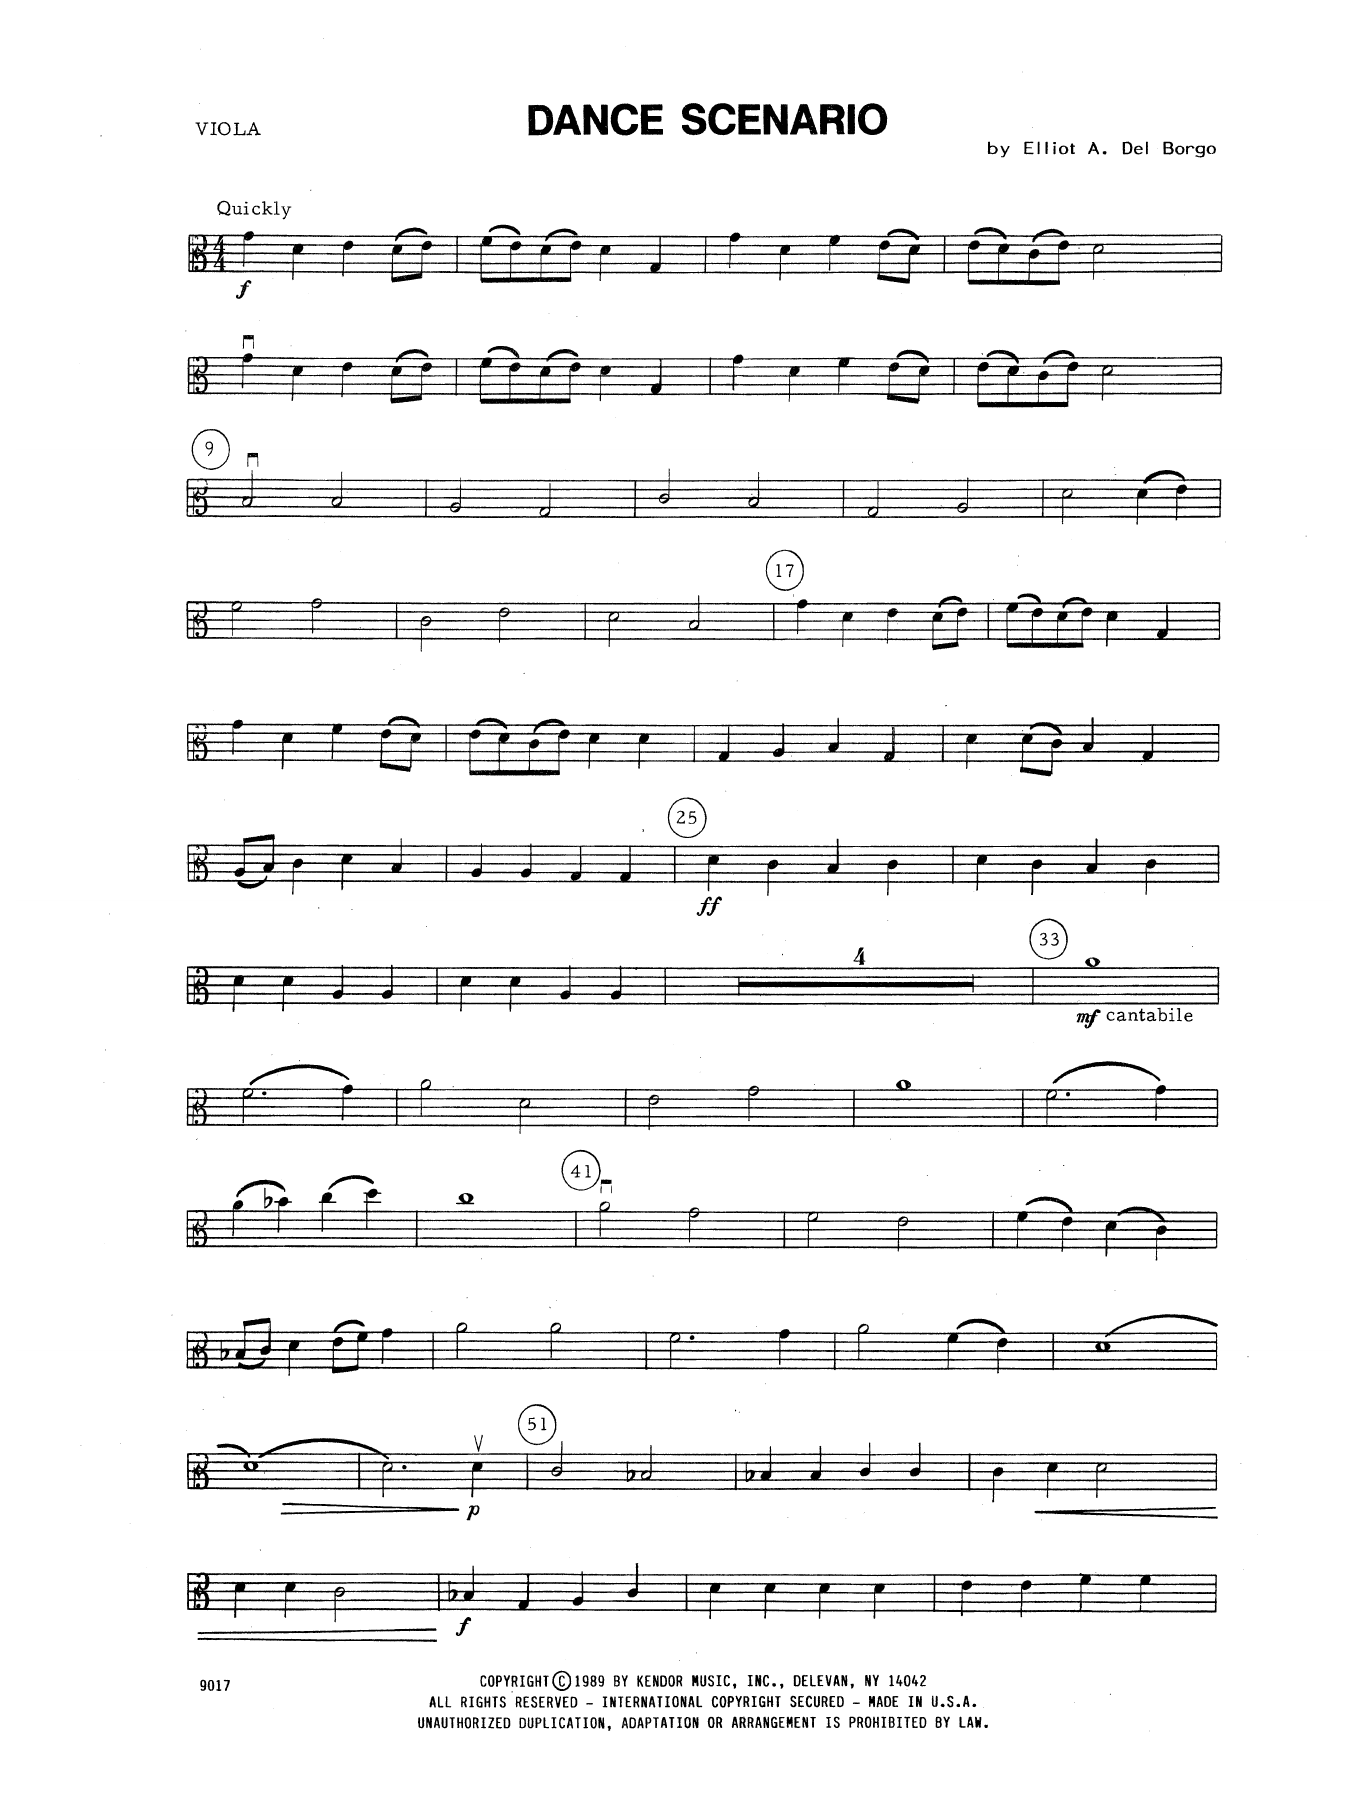 Download Elliot A. Del Borgo Dance Scenario - Viola Sheet Music